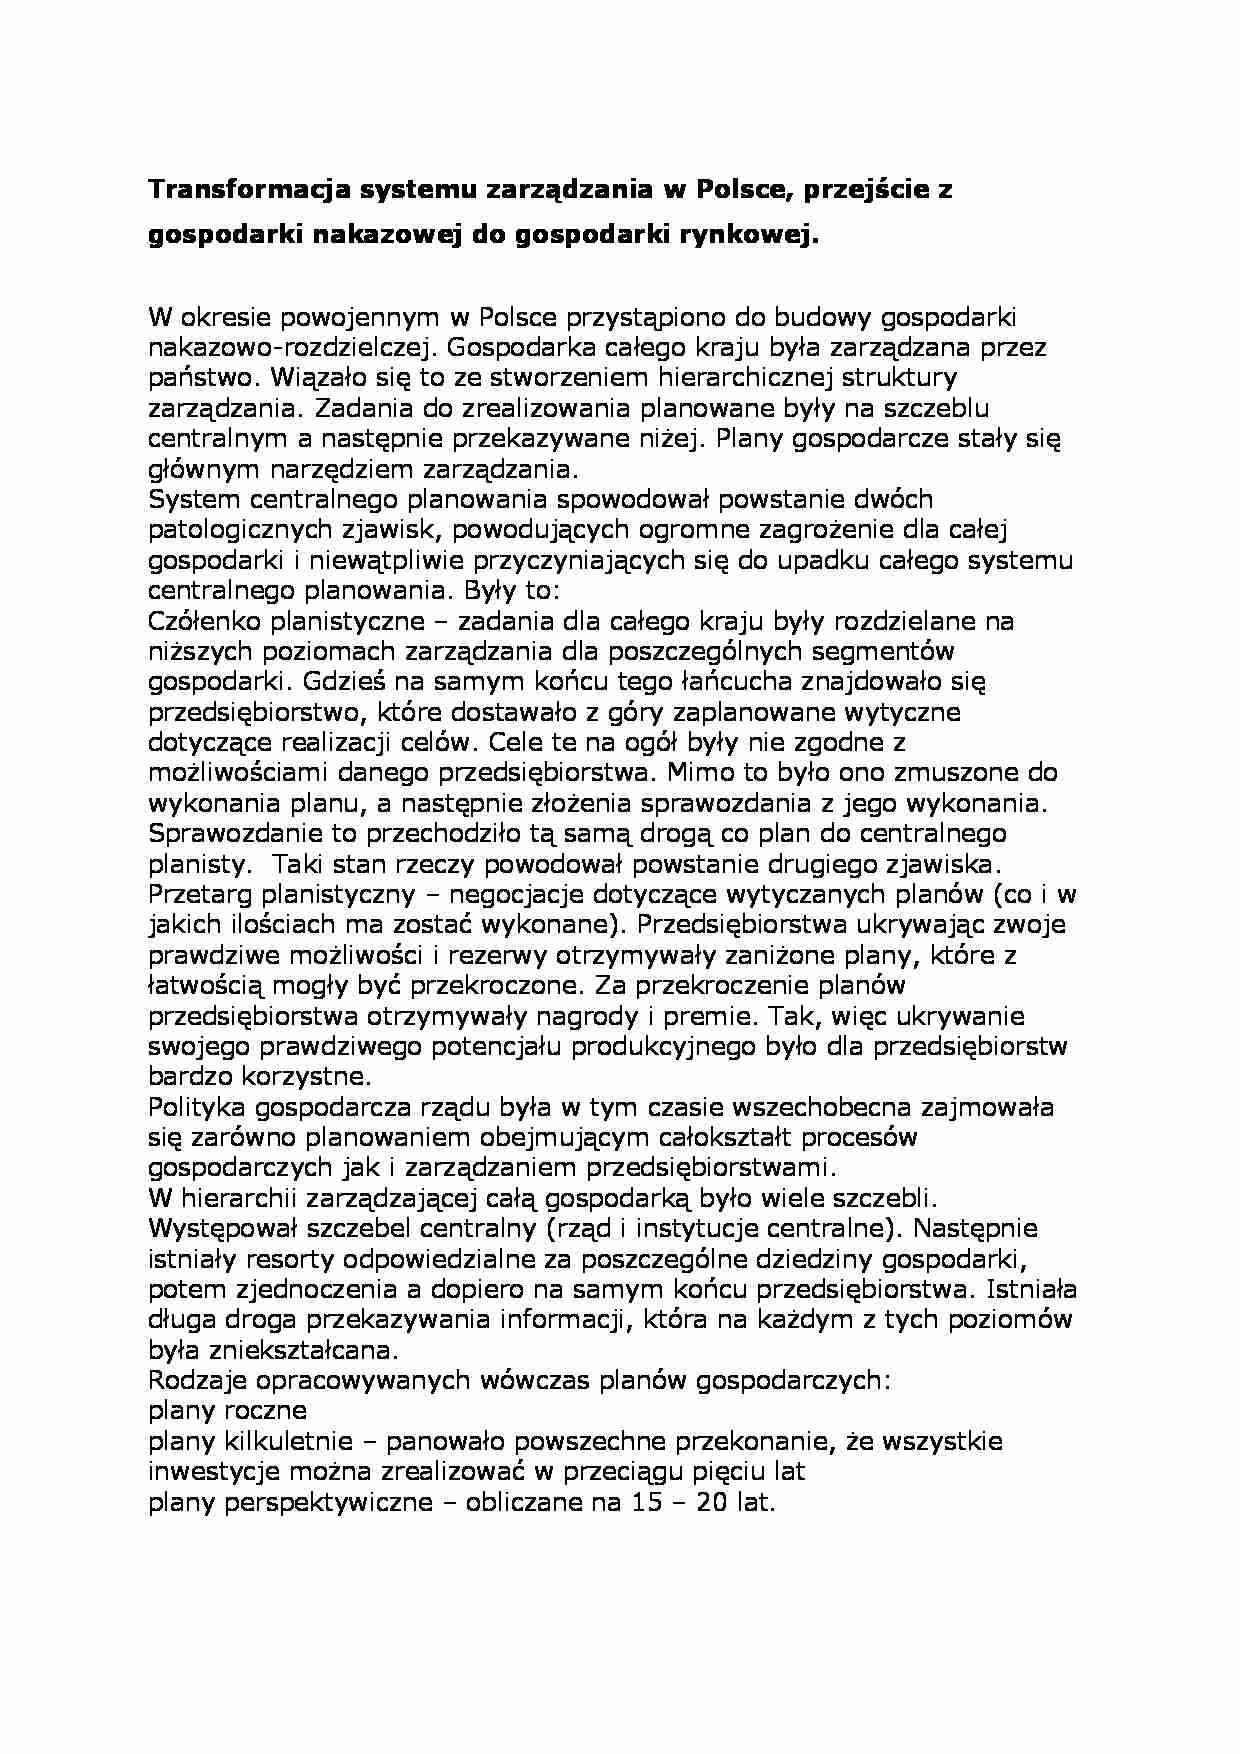 Transformacja systemu zarządzania w Polsce - strona 1